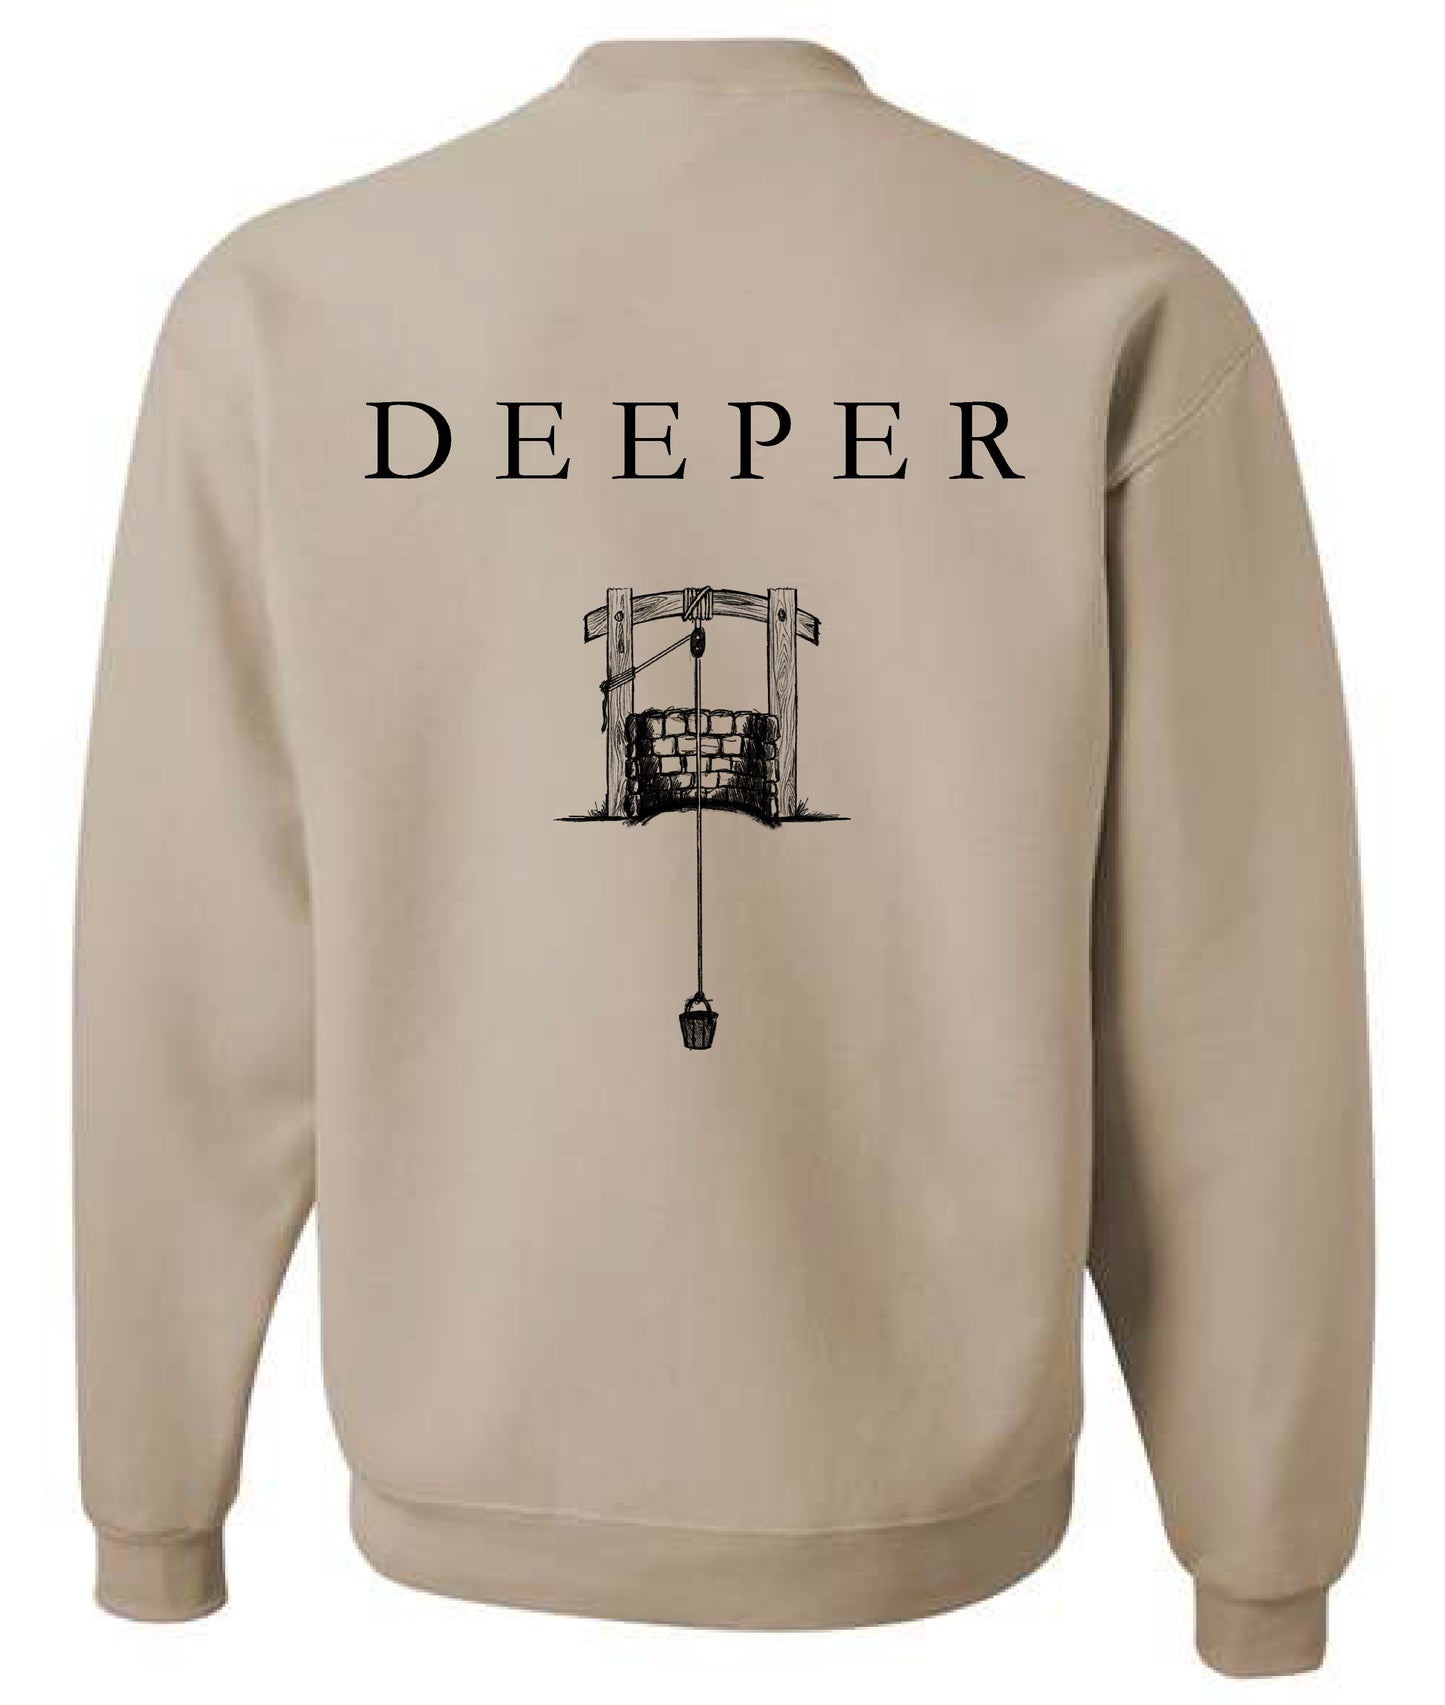 "Deeper"